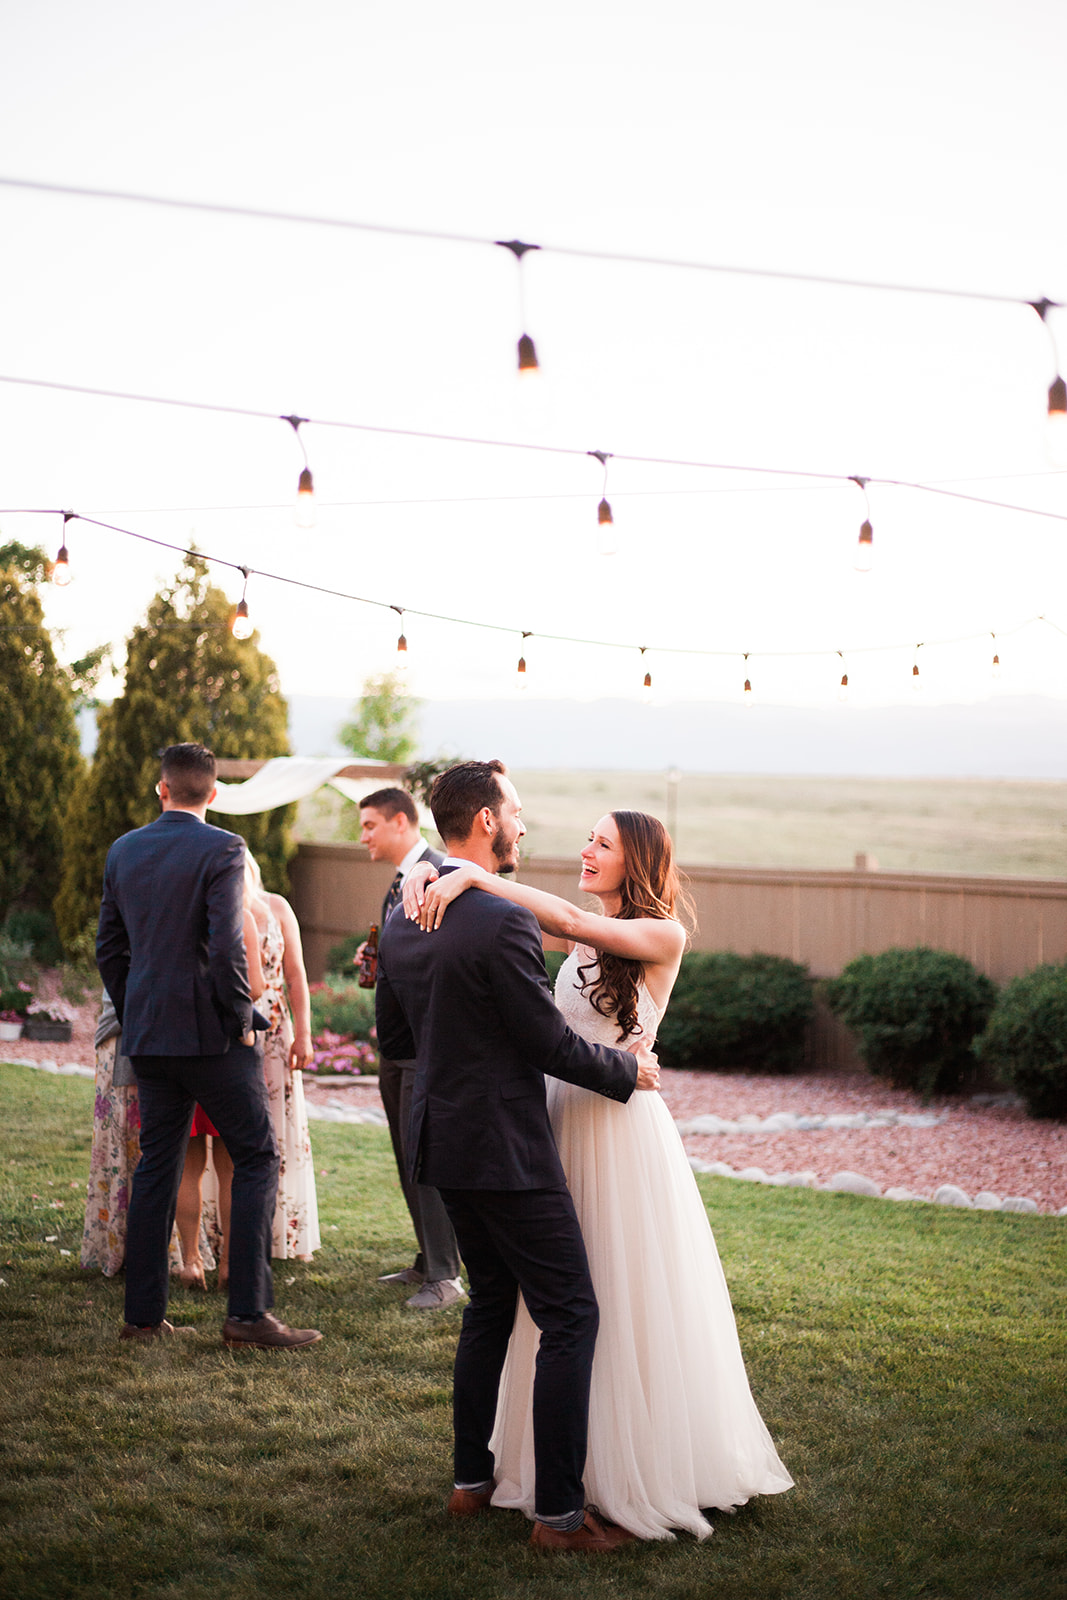 bride and groom dancing at their outdoor colorado wedding reception